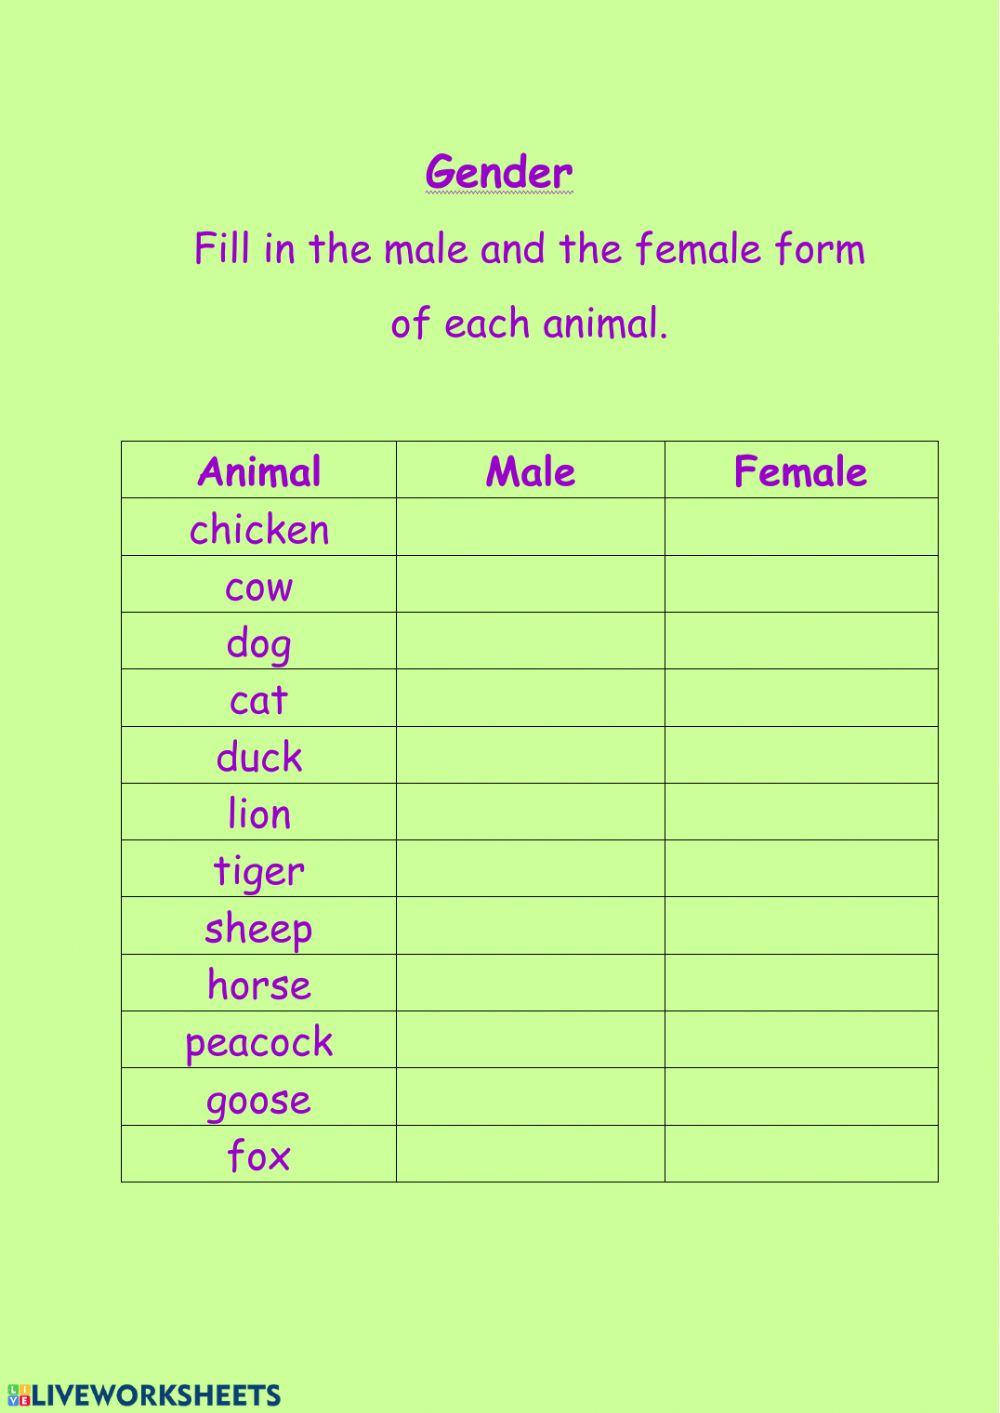 Gender of Animals